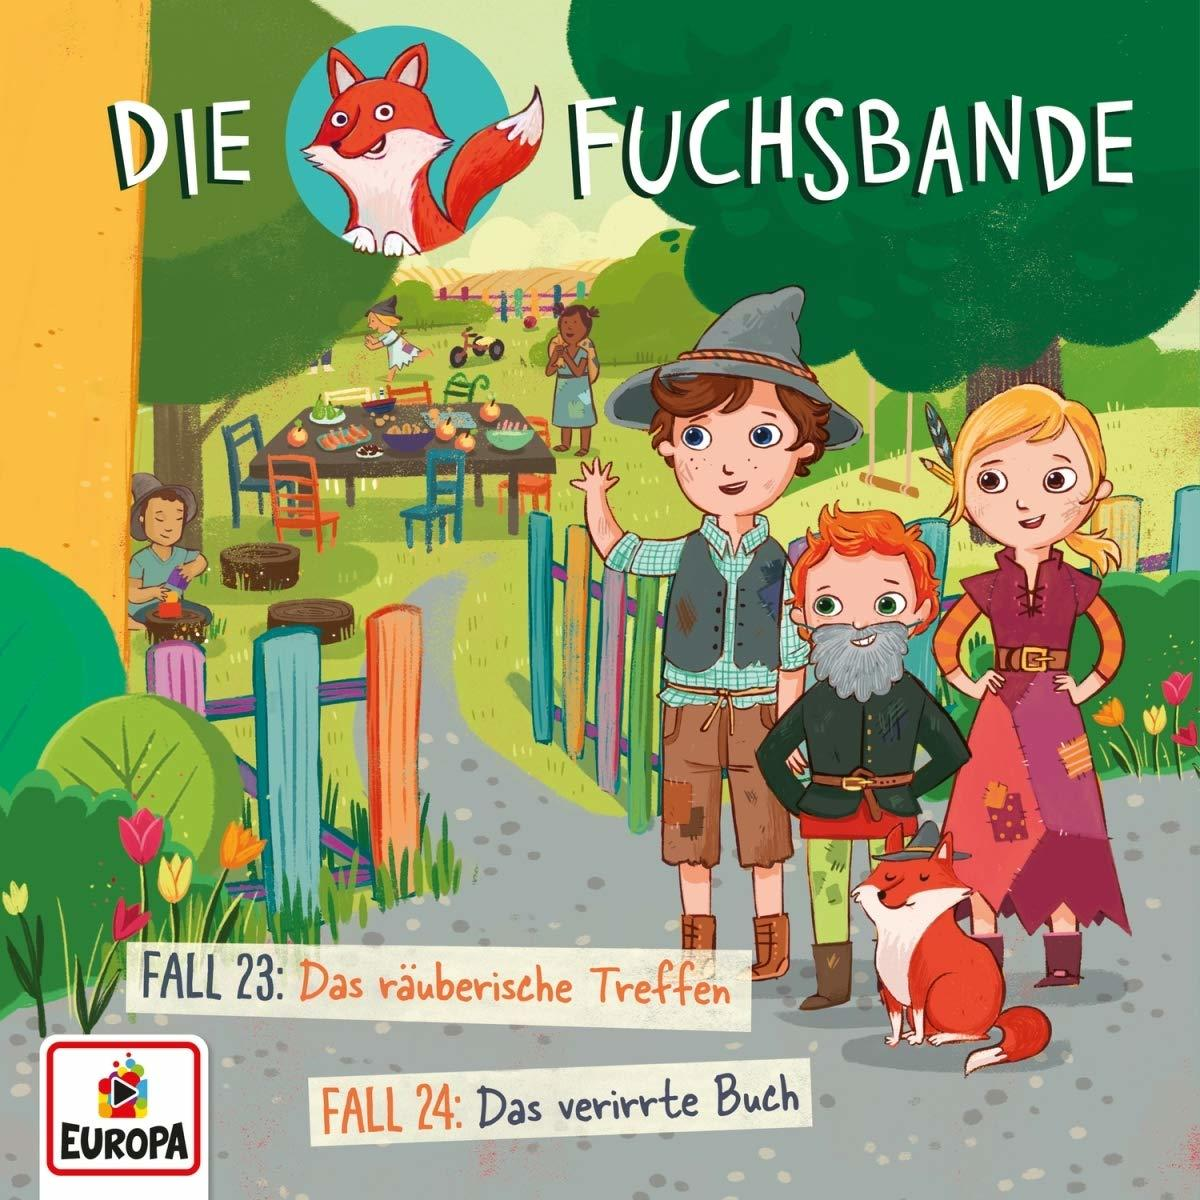 Die Fuchsbande - Treffen/Fall - (CD) 24: Das Da räuberische 23: 012/Fall